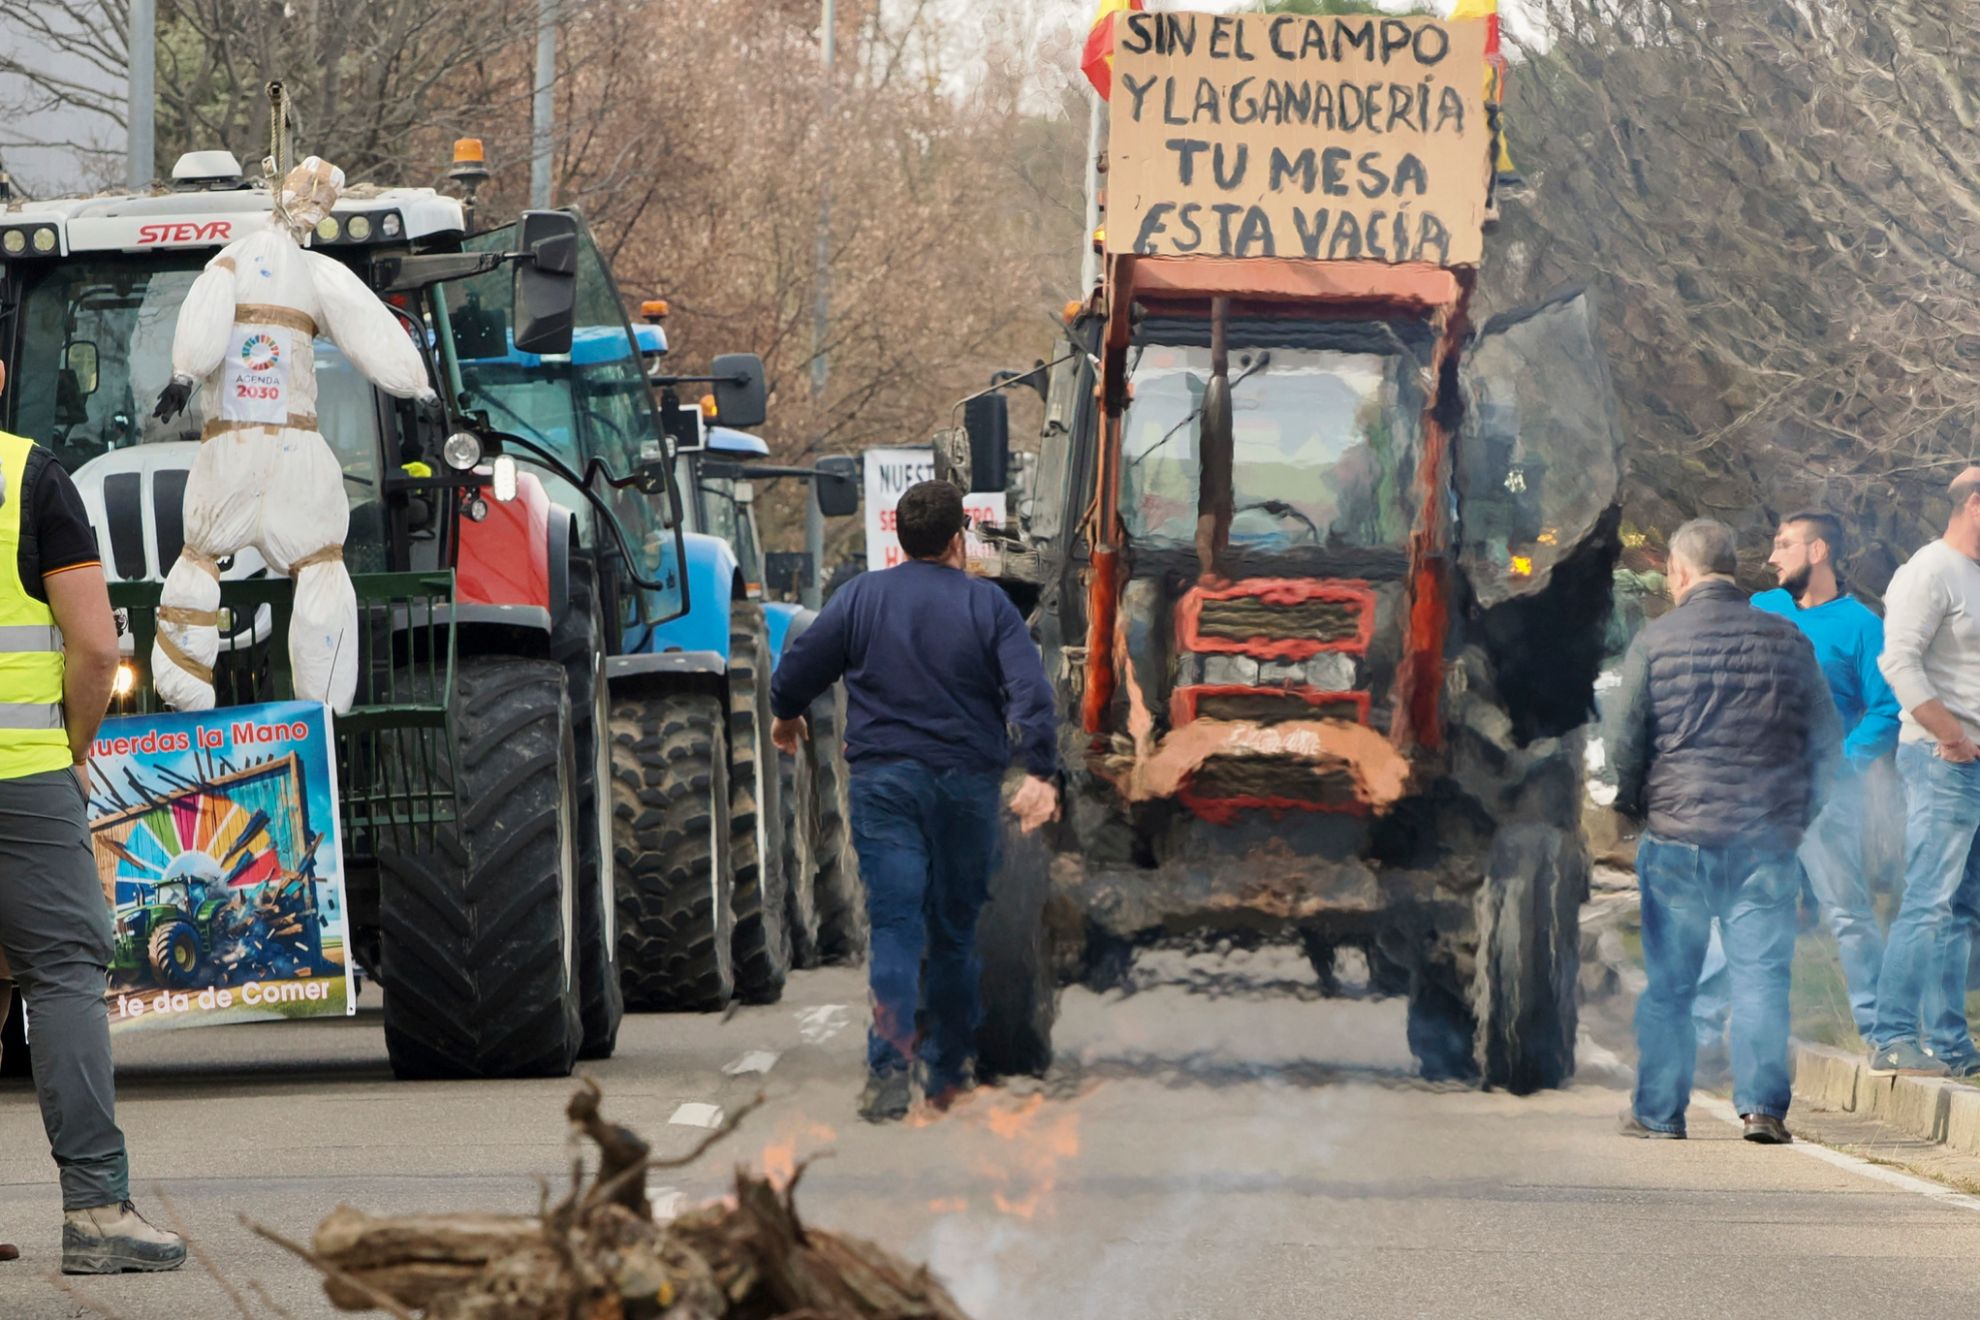 Los agricultores españoles han arrancado sus protestas... y tendrán la 'ayuda' de los camioneros.